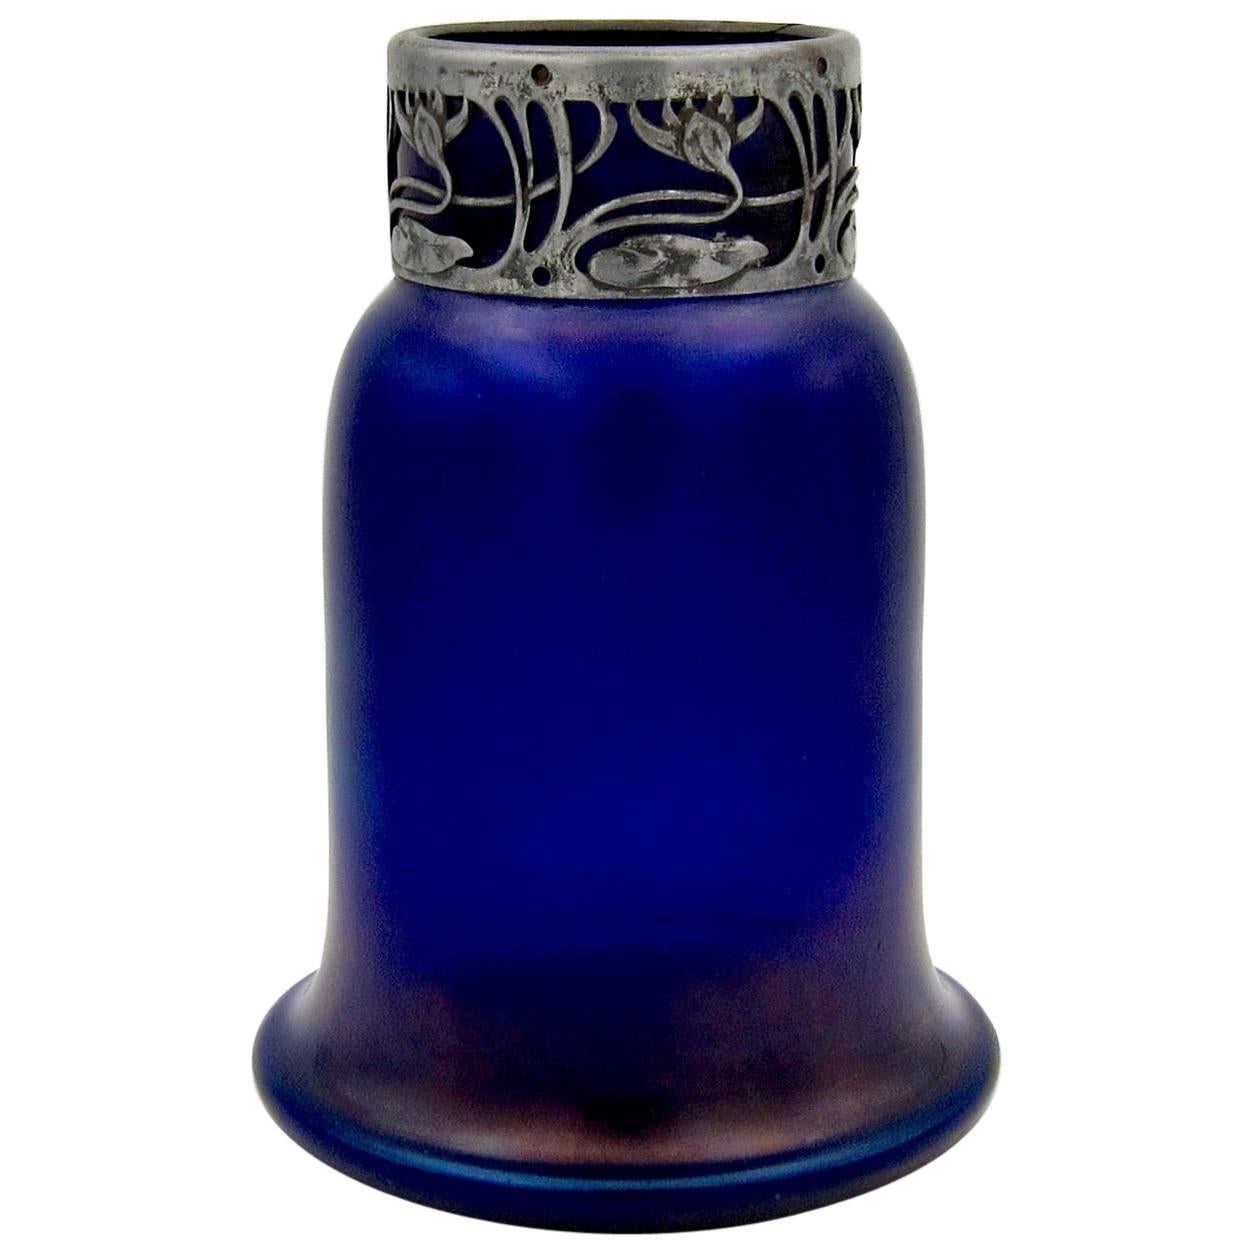 Austrian Iridescent Blue Art Glass Vase with an Art Nouveau Silver Metal Collar